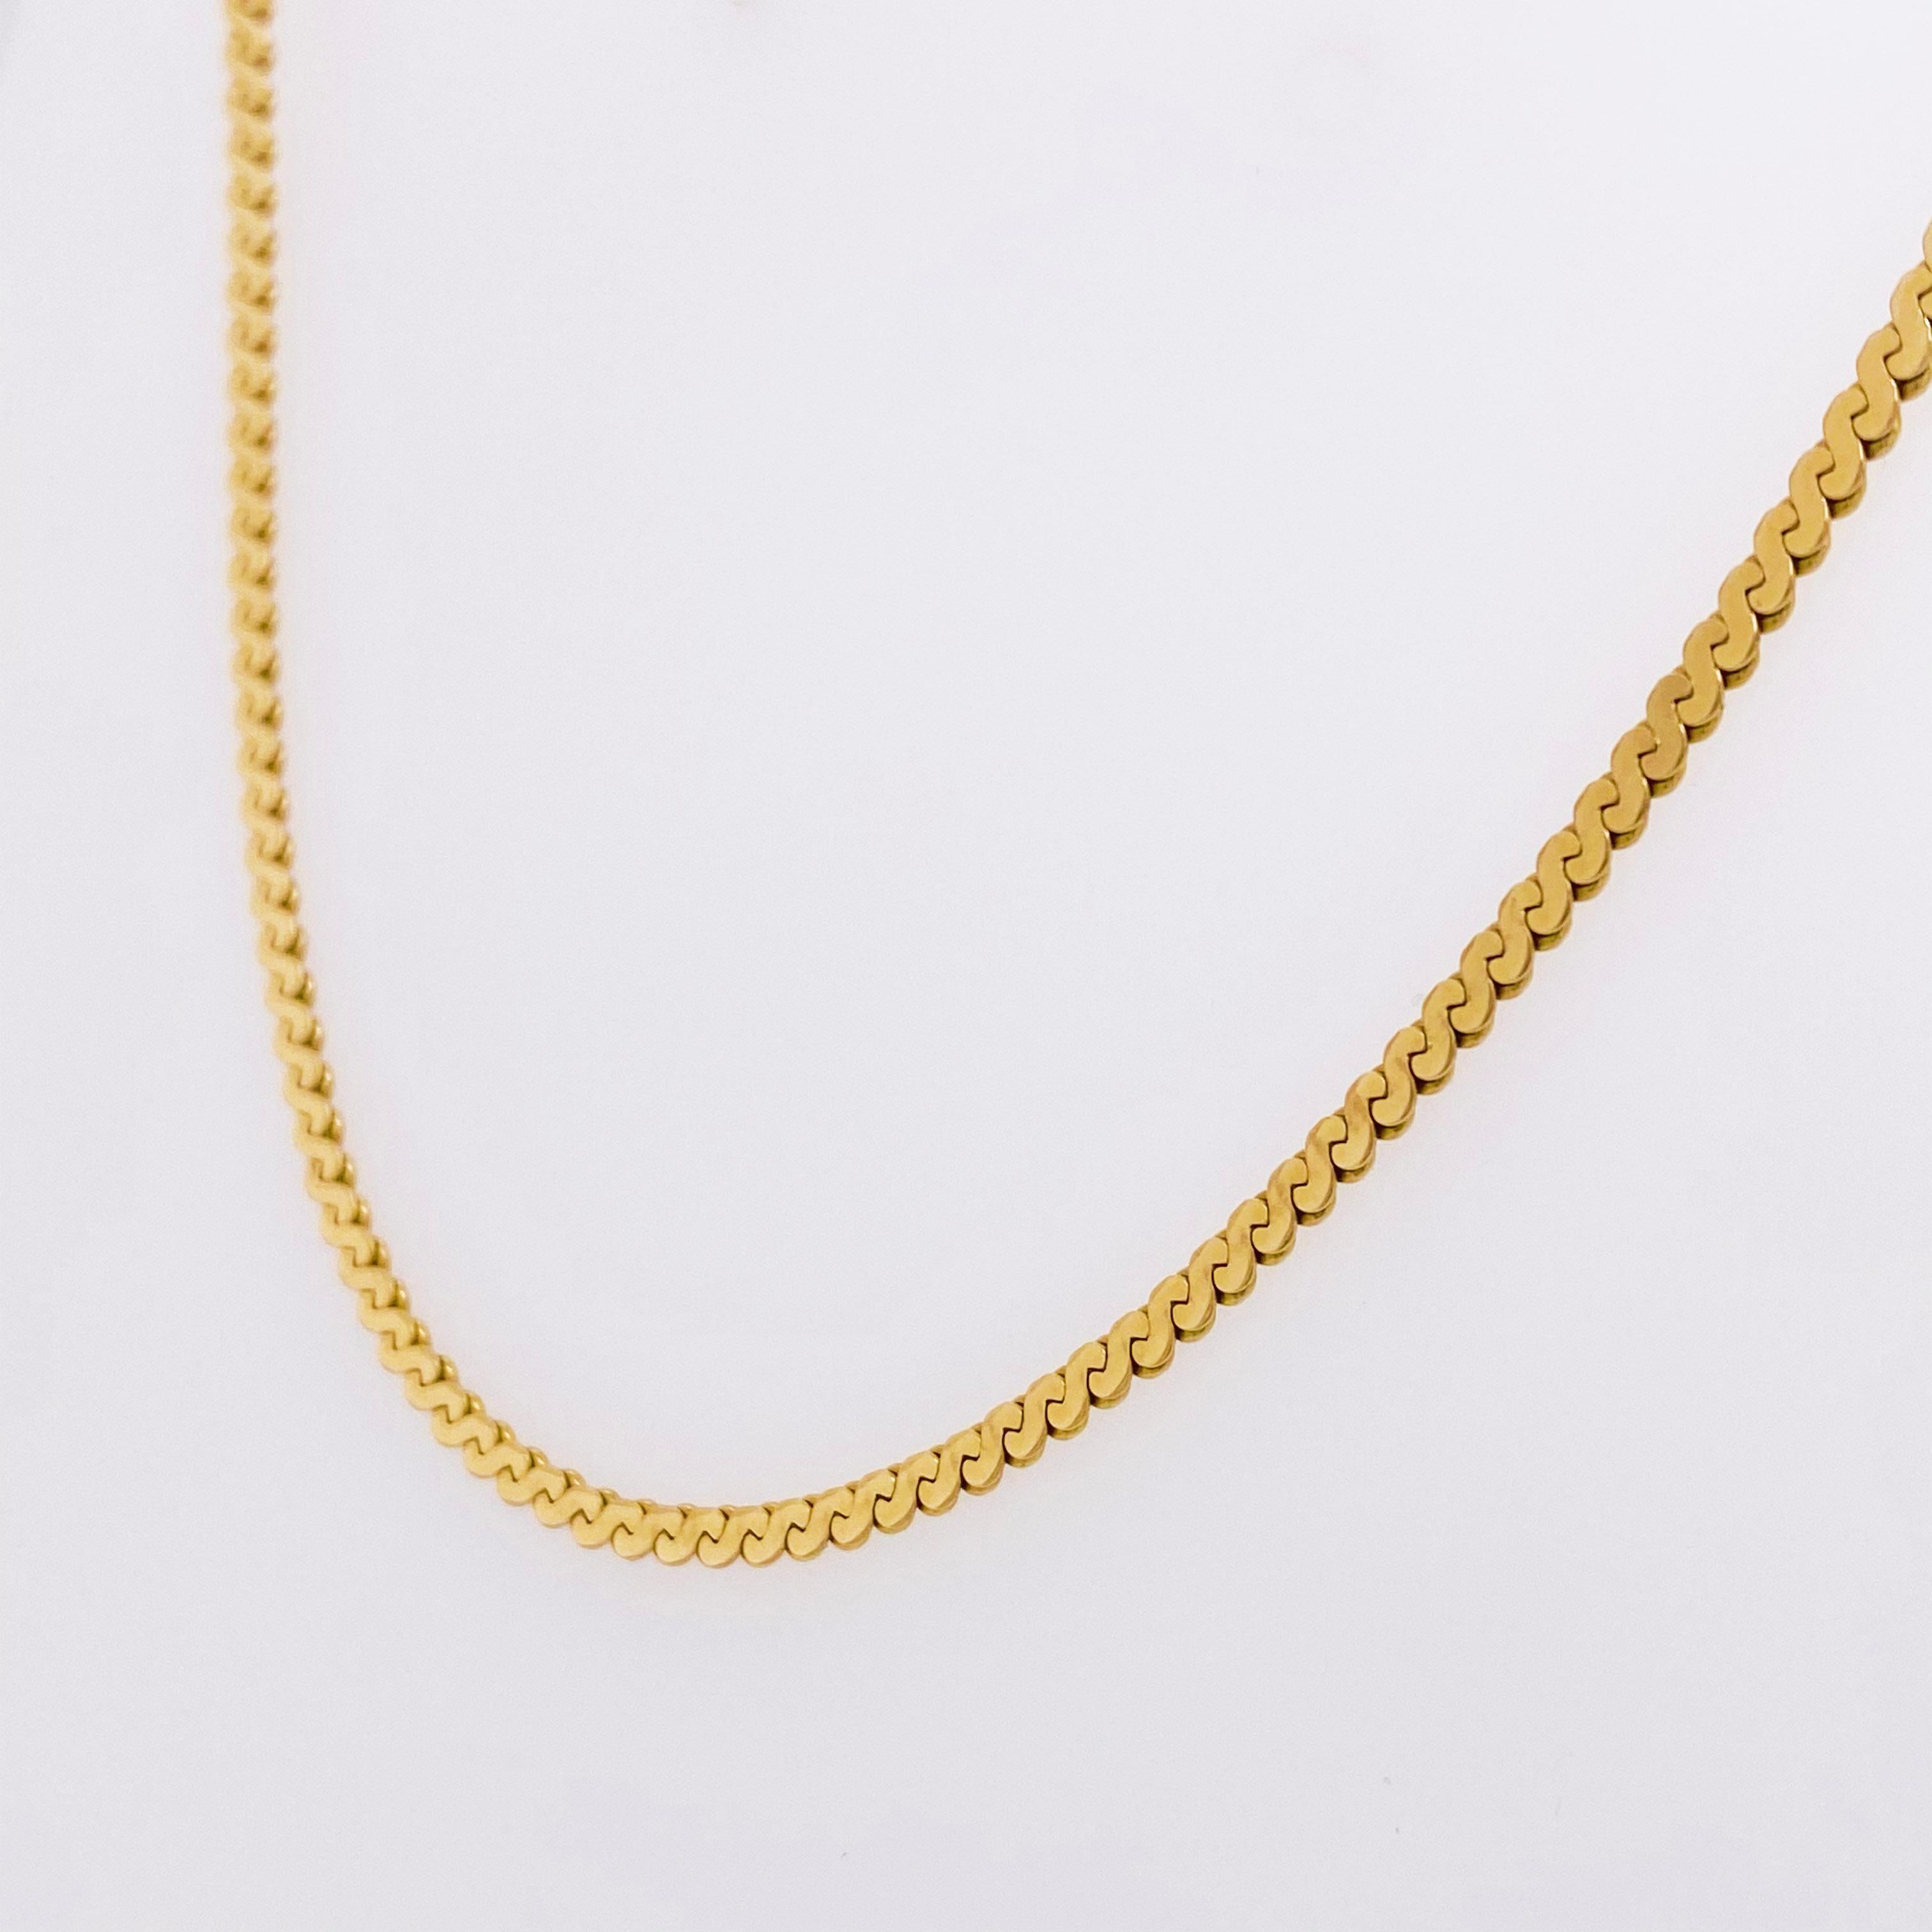 serpentine chain necklace